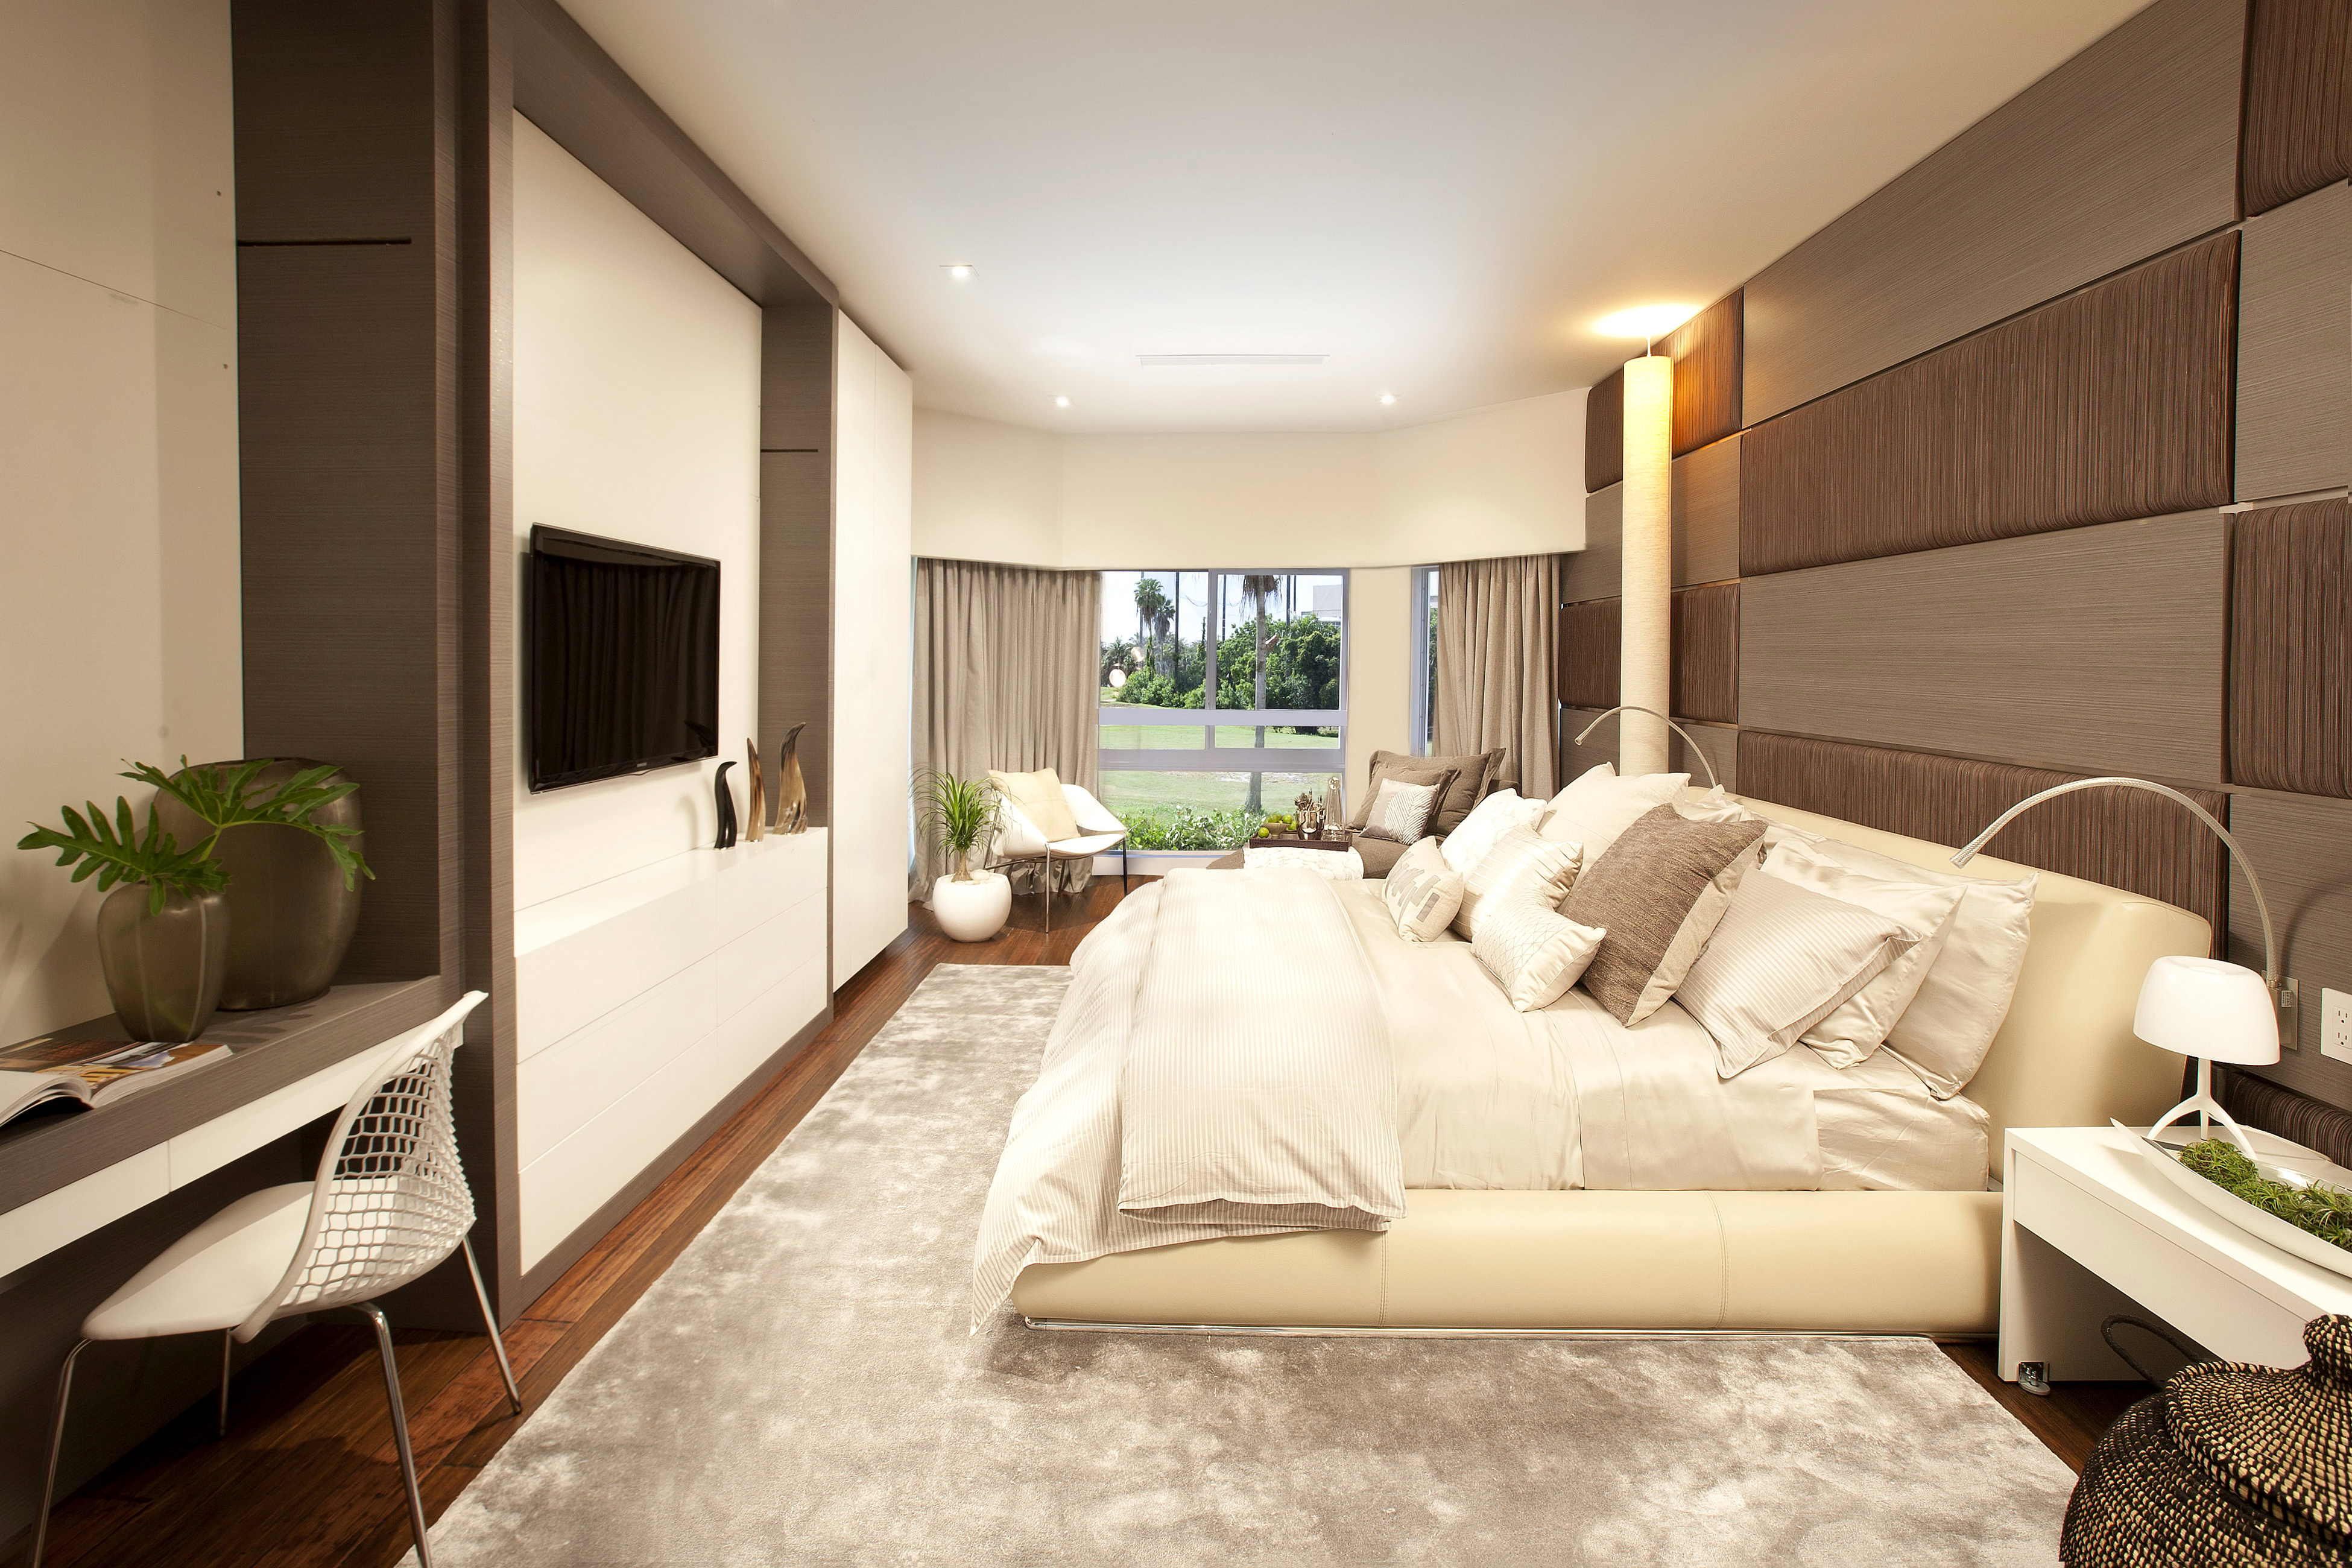 Room tone. Pluton 60w s-550-shiny-220v-ip44. Интерьер спальной комнаты. Большая спальня в современном стиле. Интерьер в бежевом стиле.